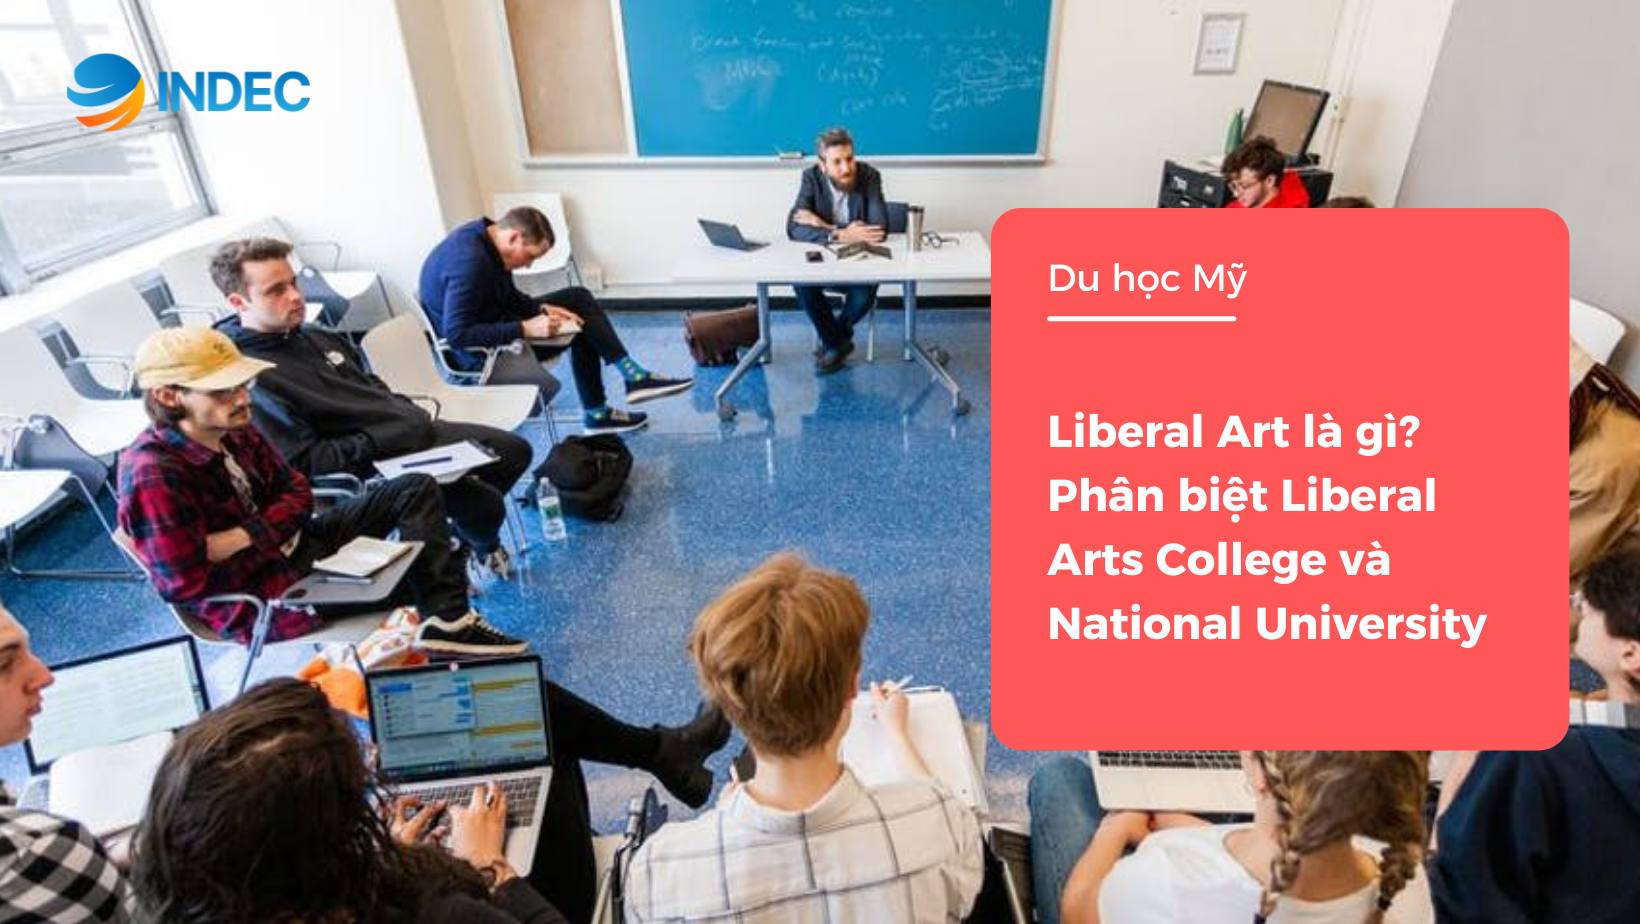 Liberal Art là gì? Phân biệt Liberal Arts College và National University